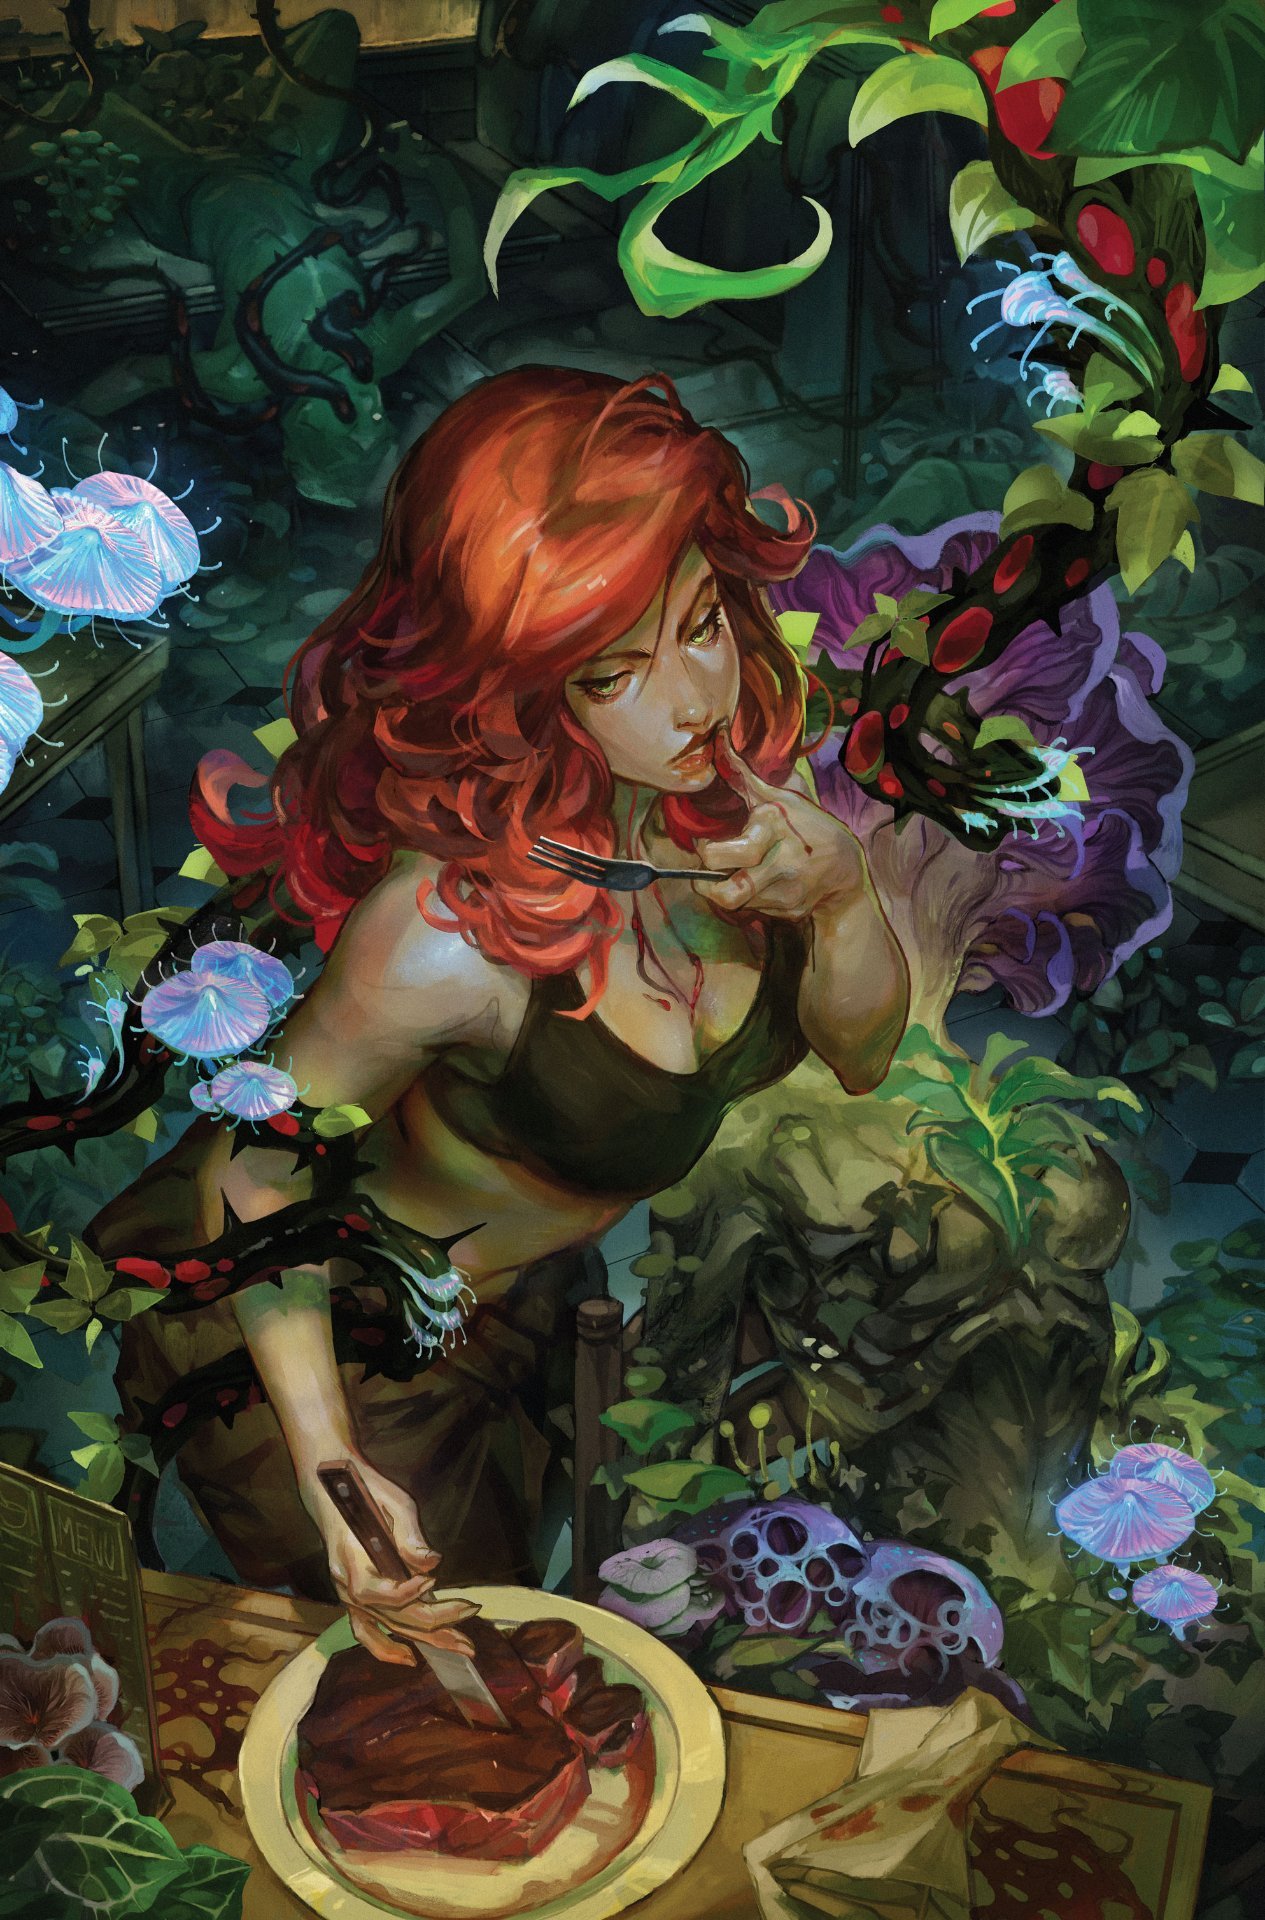 Cover di Poison Ivy 1 di Jessica Fong, in uscita a giugno per le celebrazioni del Pride DC Comics